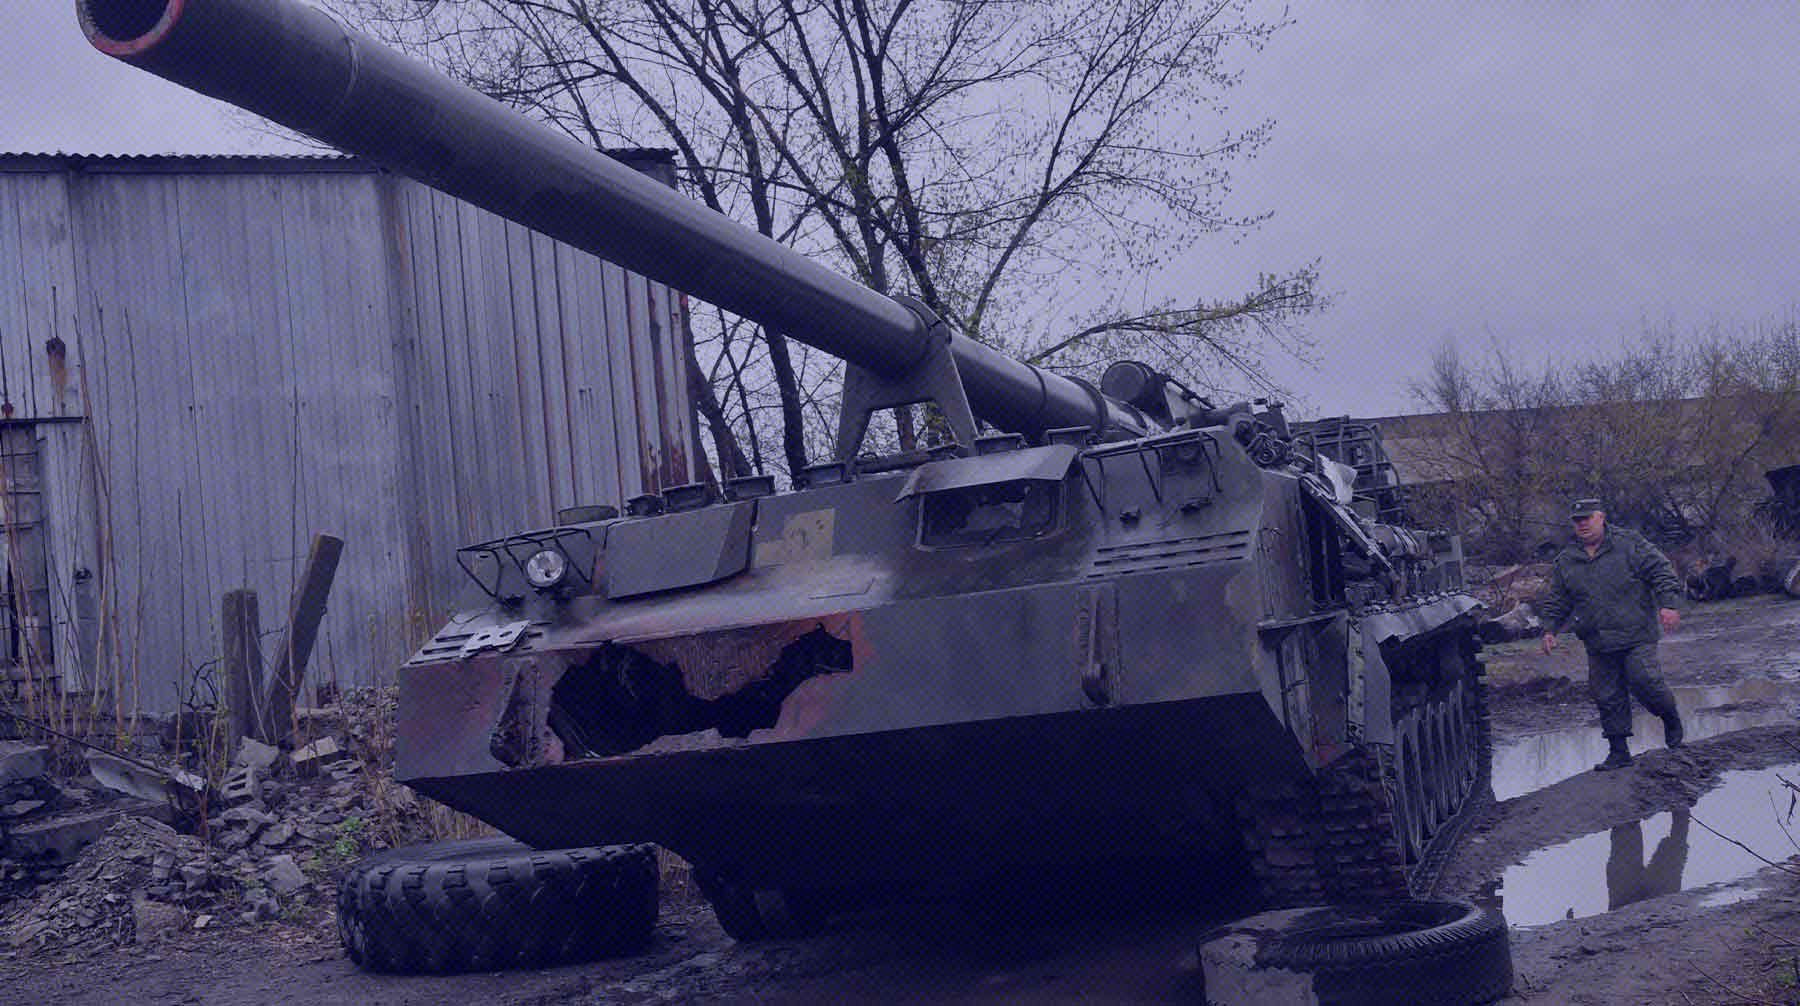 Dailystorm - Украина за полгода боев потеряла почти в два раза больше танков и САУ, чем вермахт под Сталинградом и на Курской дуге